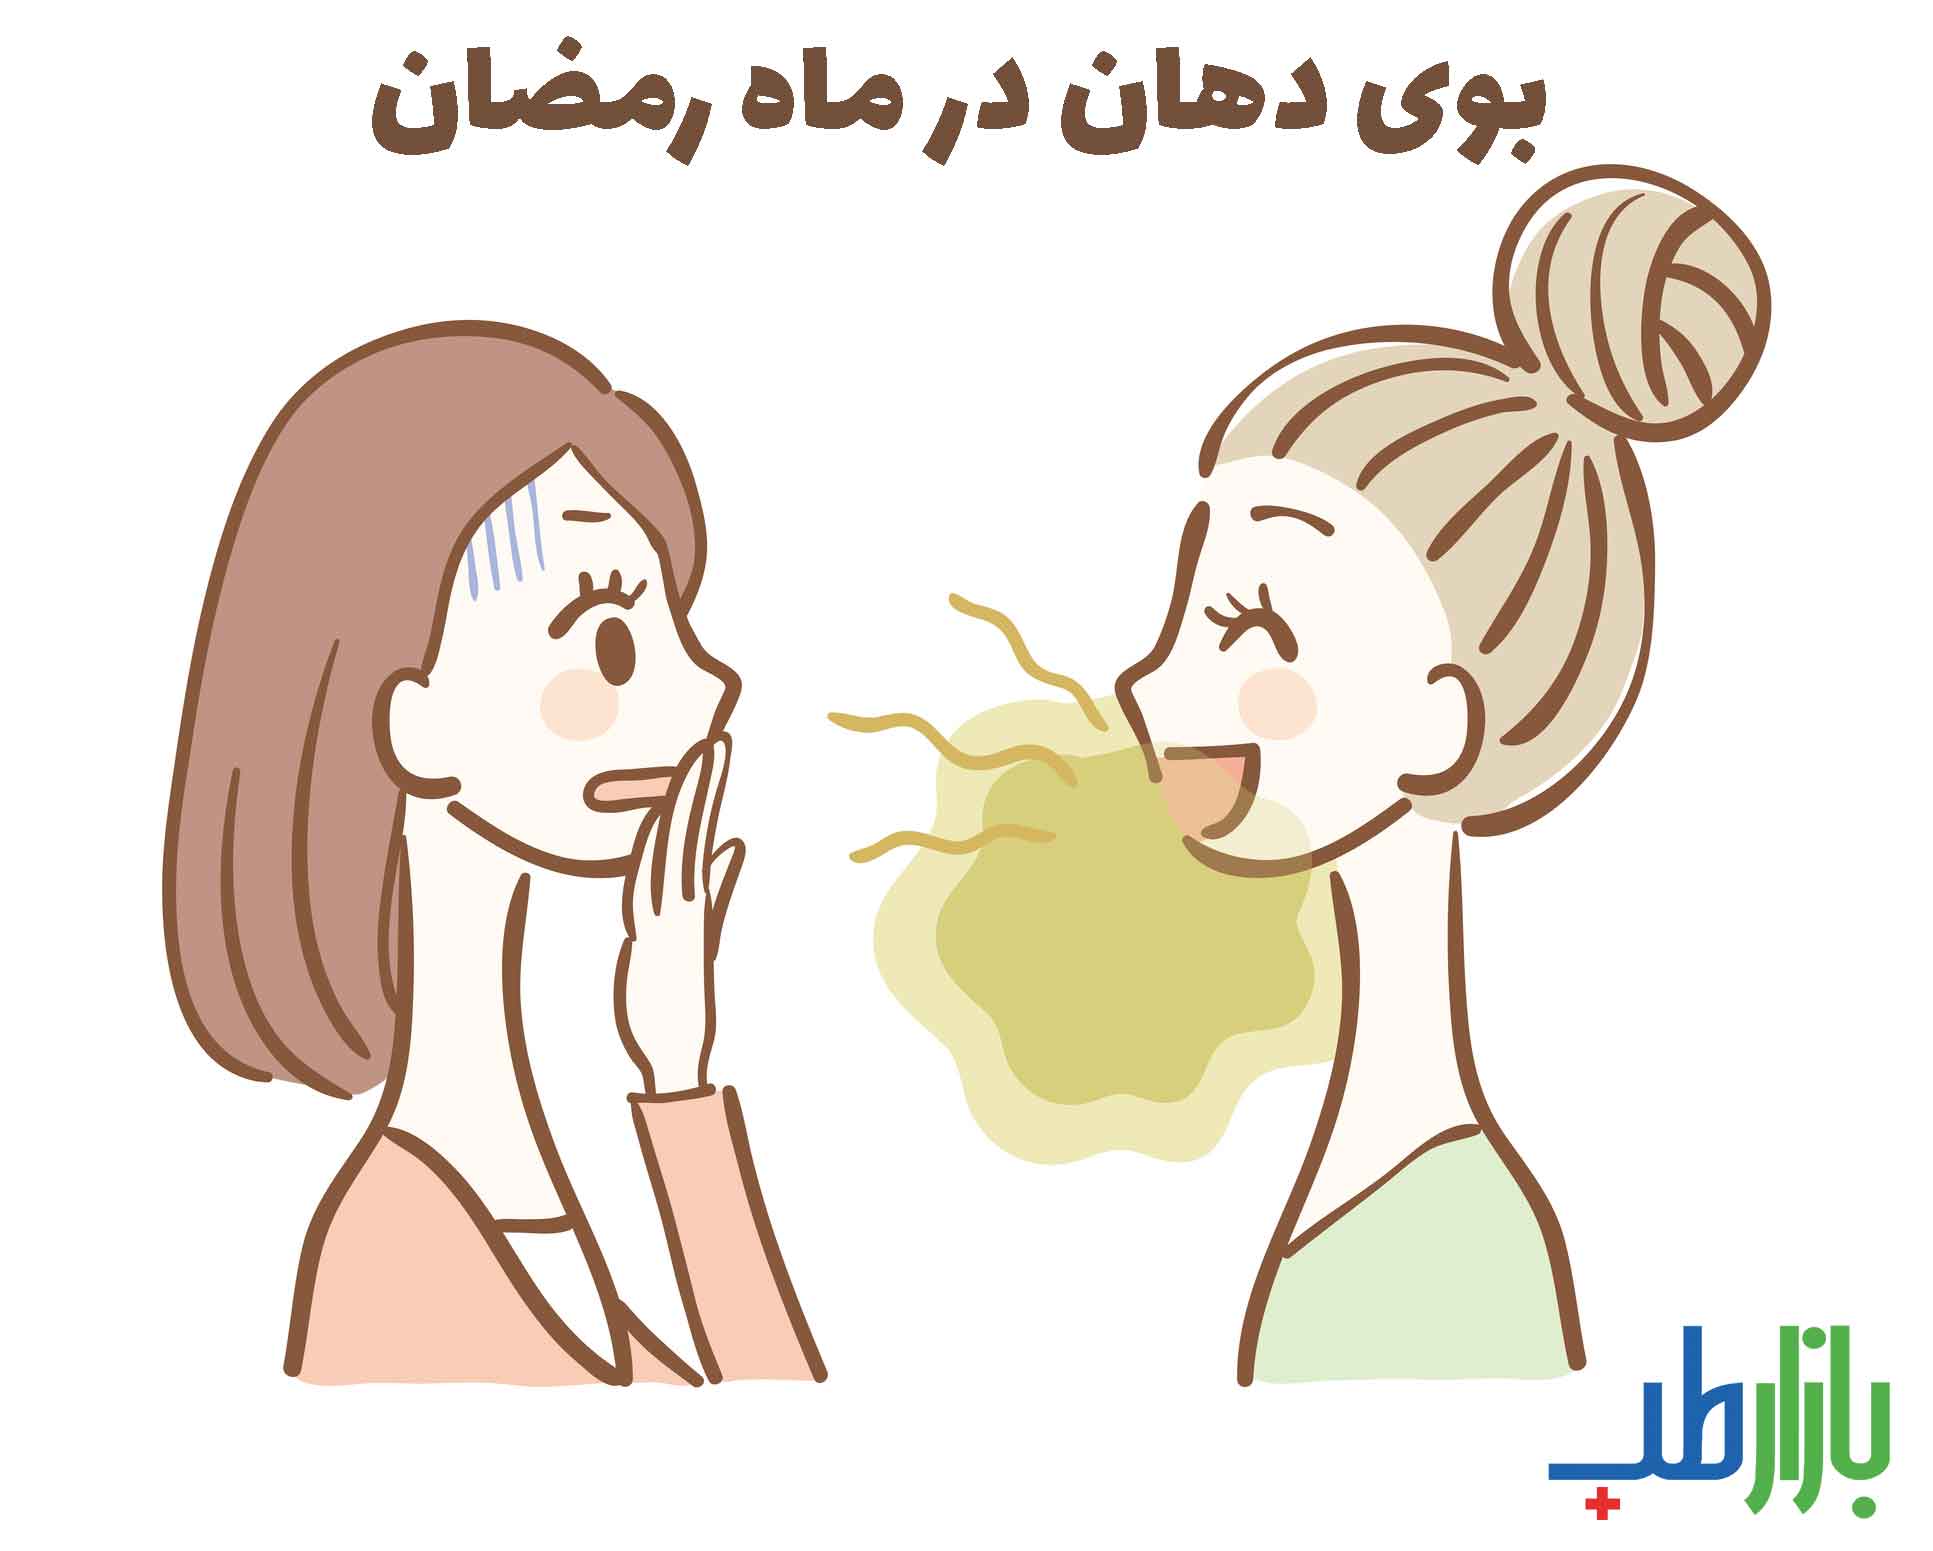 بوی دهان در ماه رمضان